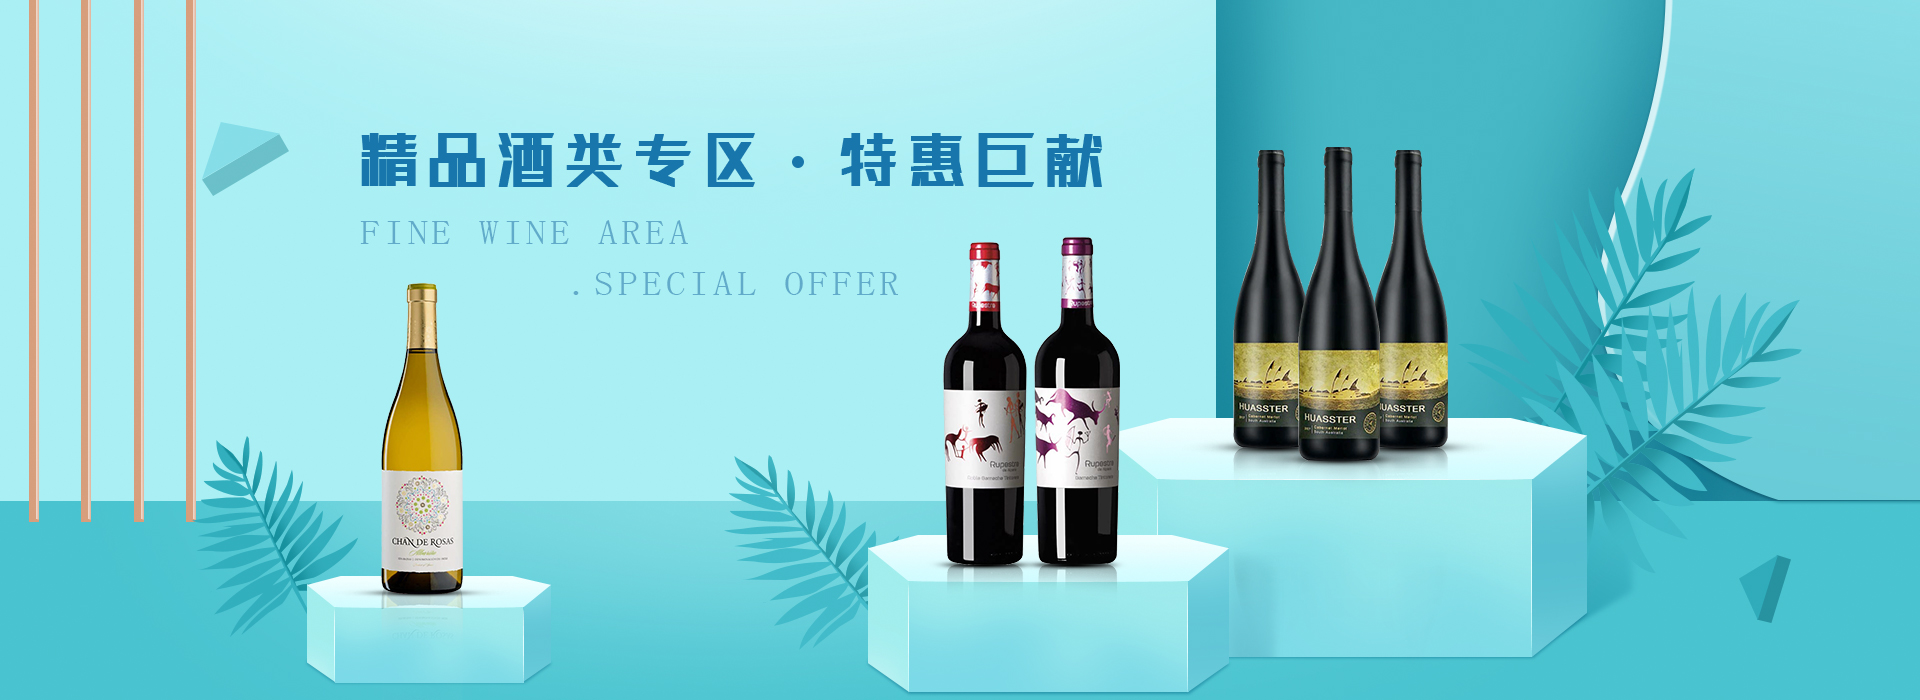 西班牙红酒零售要多少钱_广州葡萄酒、香槟报价-福莱沃酒业广州有限公司